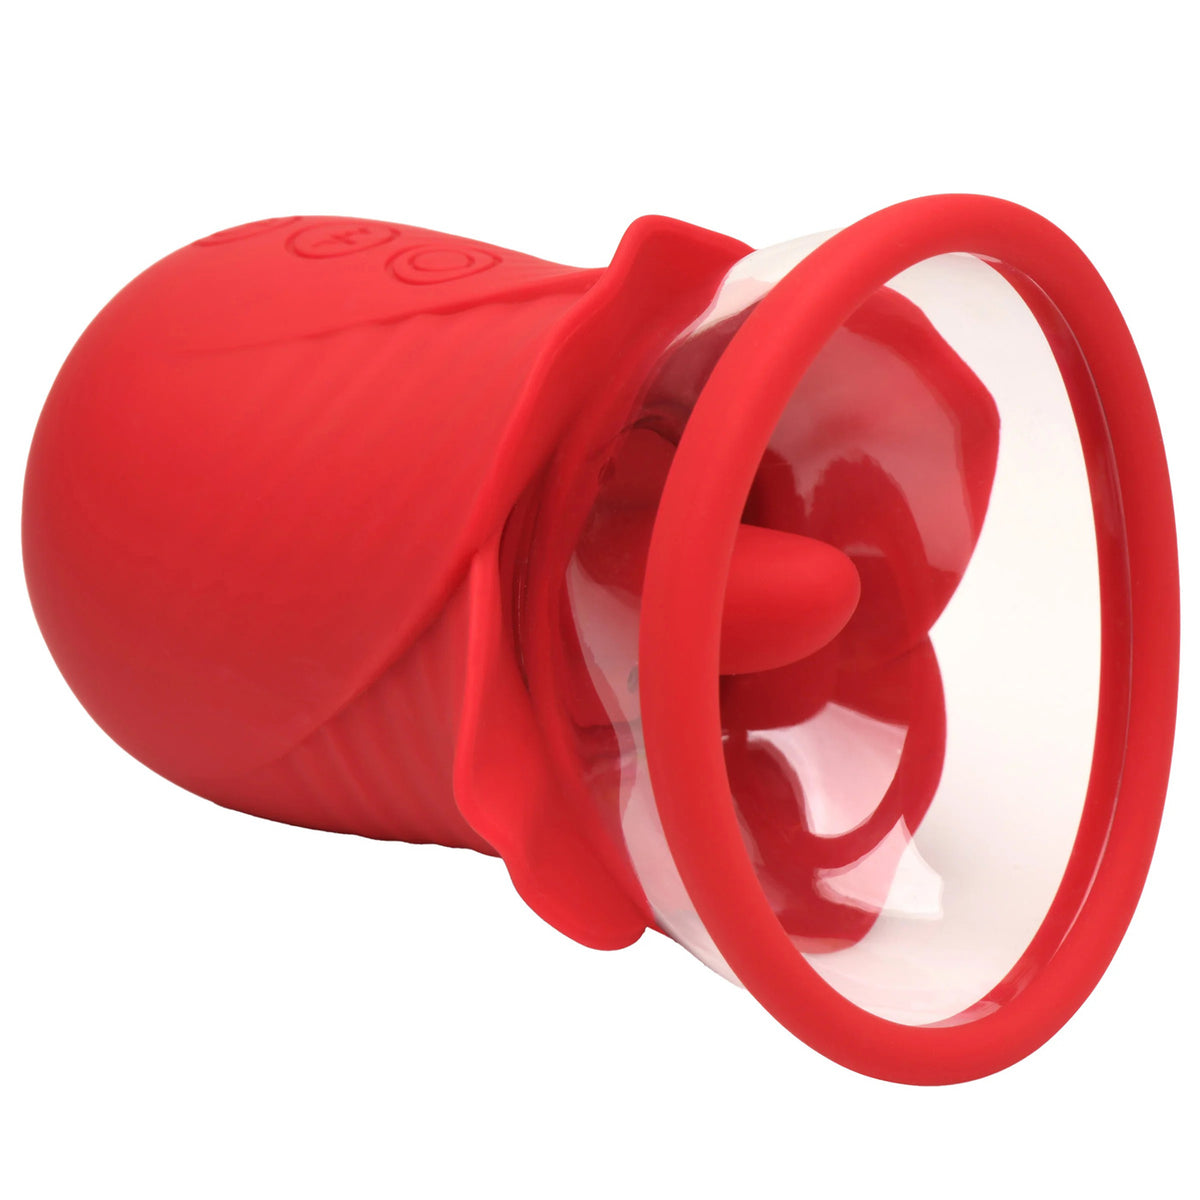 Lily Lover Estimulador de Clítoris Chupador y Vibrador - Rojo